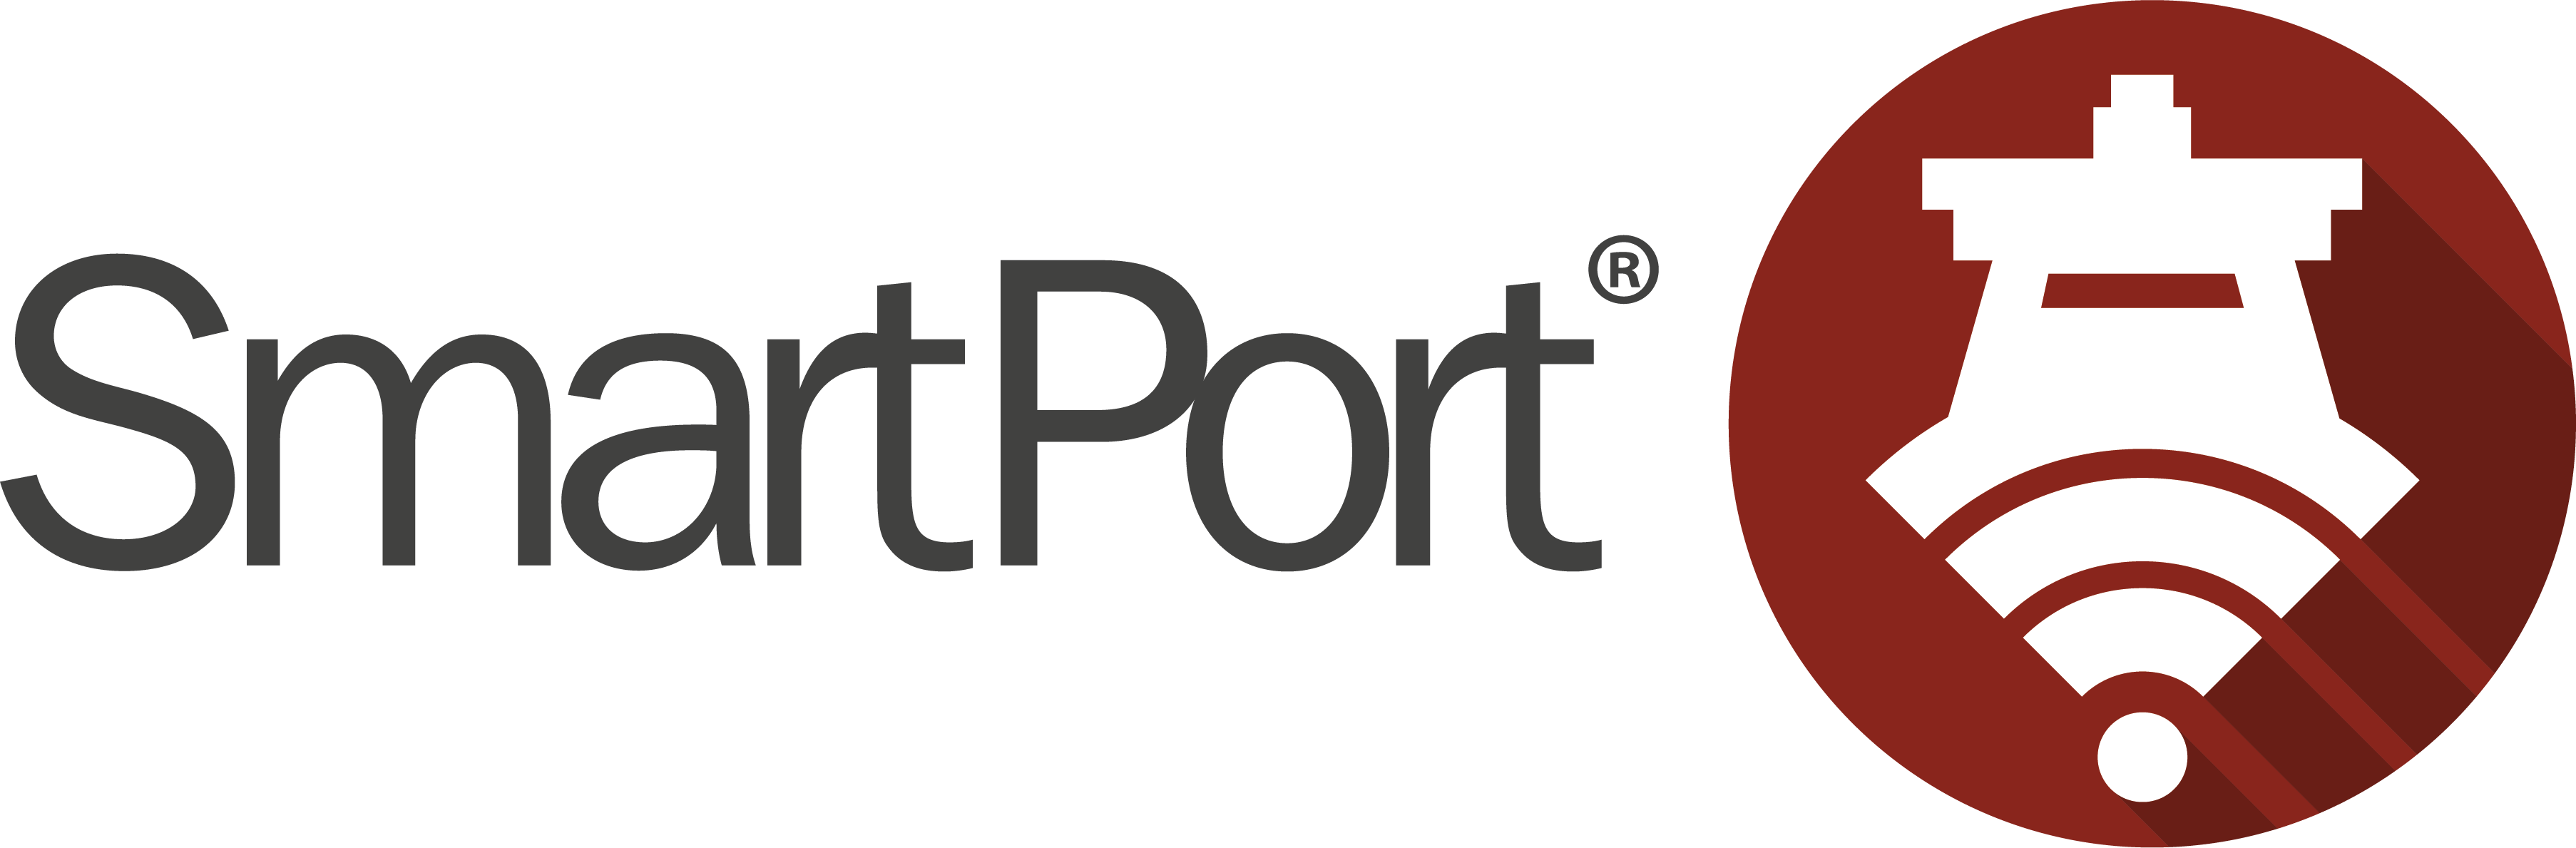 SmartPort-logo-black